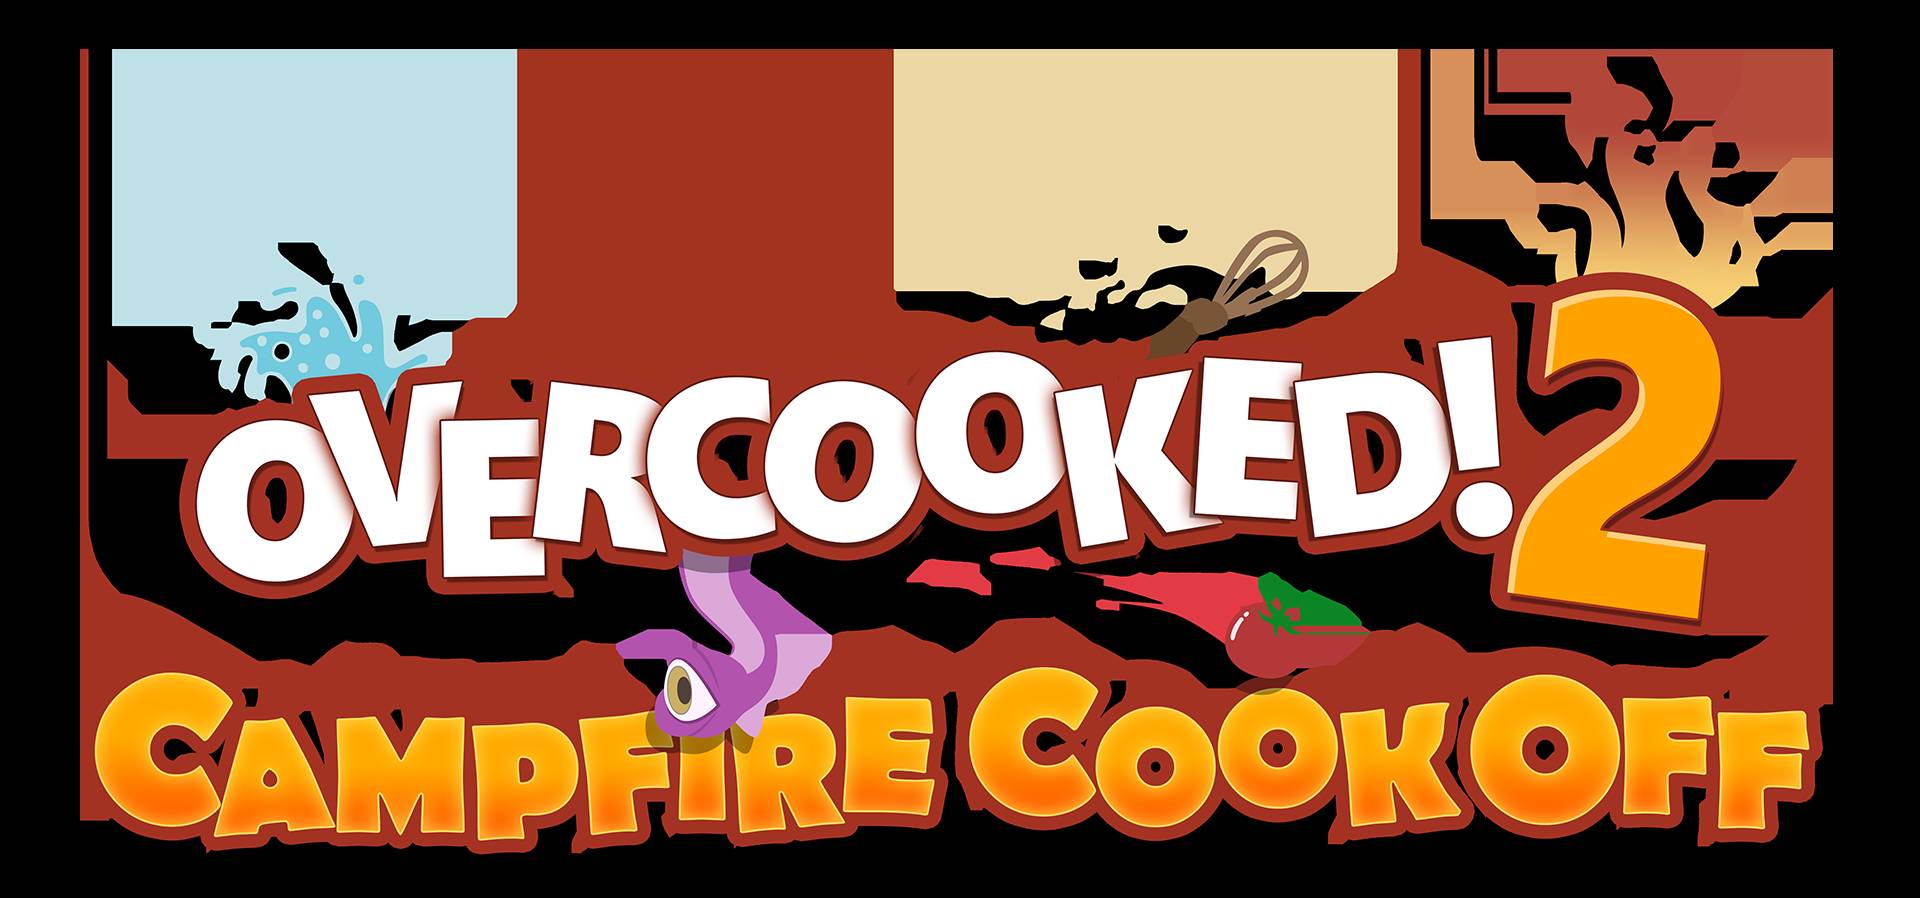 Comienza la guerra de comida con Overcooked 2: Campfire Cook-off